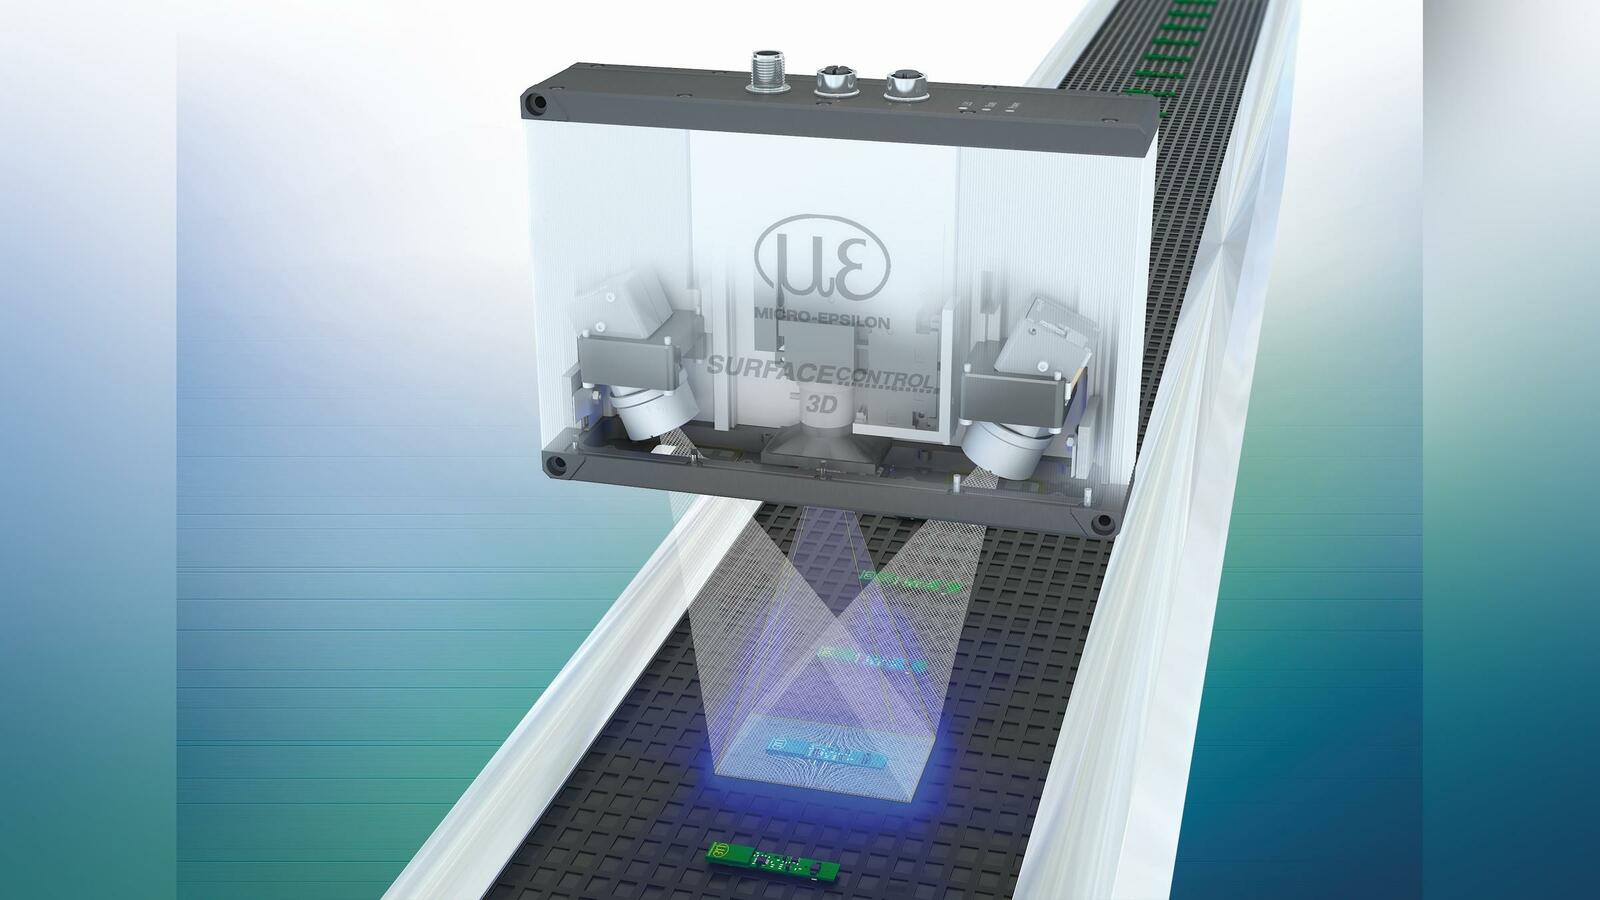 Für den Einsatz in industriellen Anwendungen zur automatisierten Inline-3D-Messung zur Geometrie-, Form- und Oberflächenprüfung auf diffus reflektierenden Oberflächen ist der performante 3D-Snapshot-Sensor Surface Control 3D 3200 bestens geeignet. 